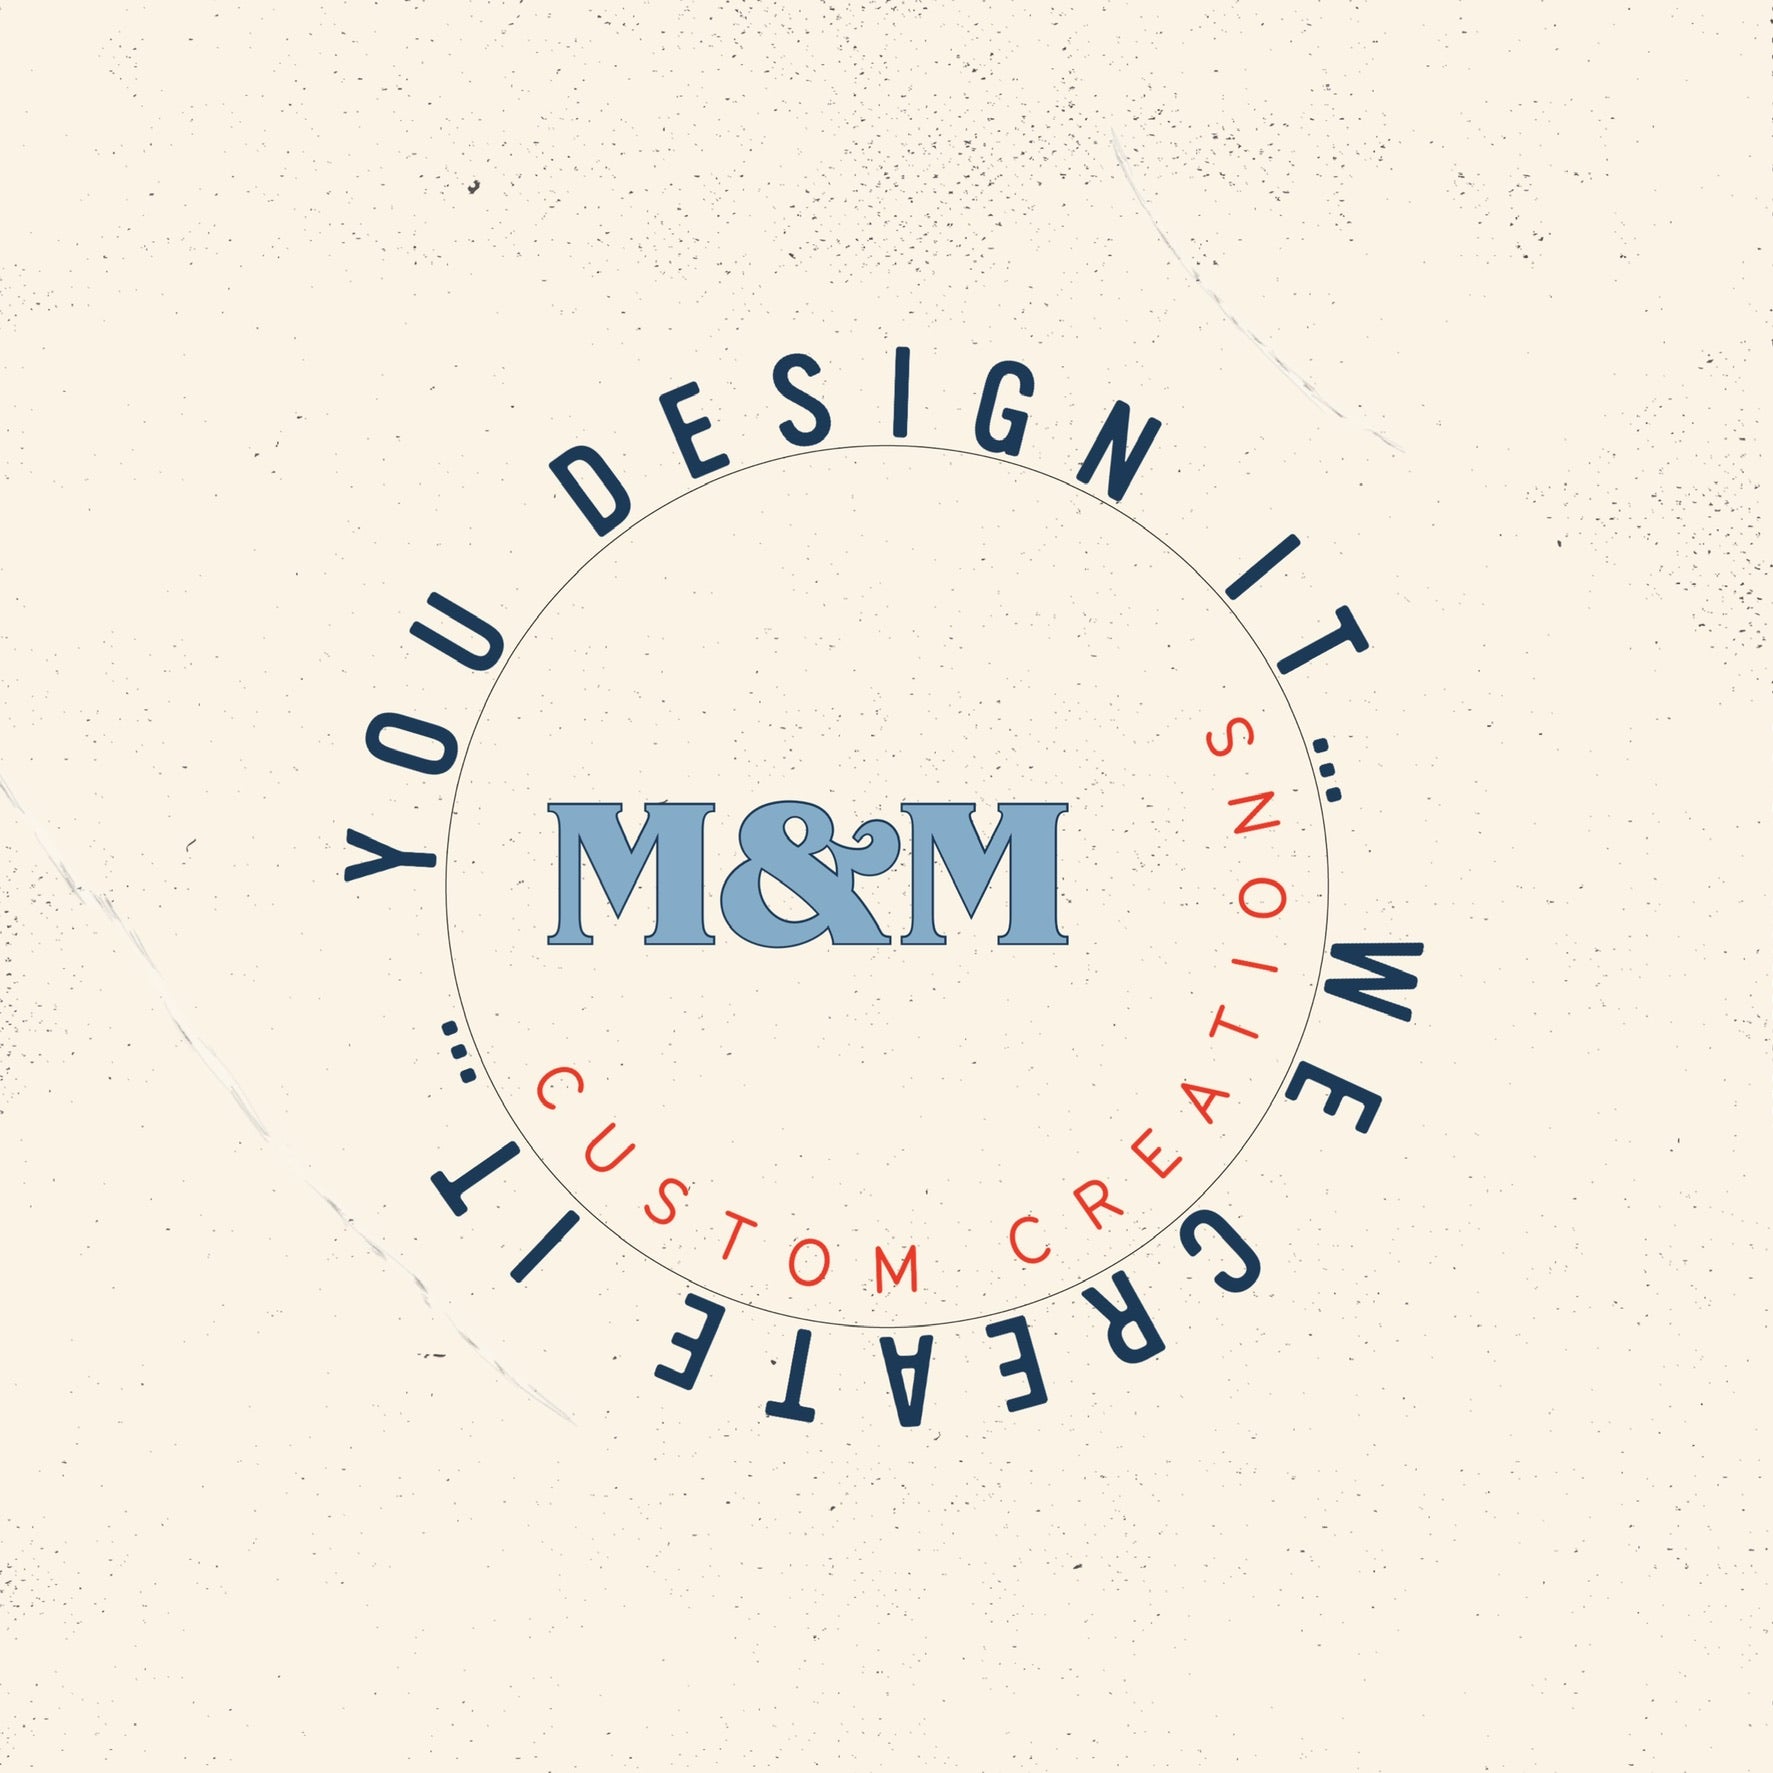 m&m custom design